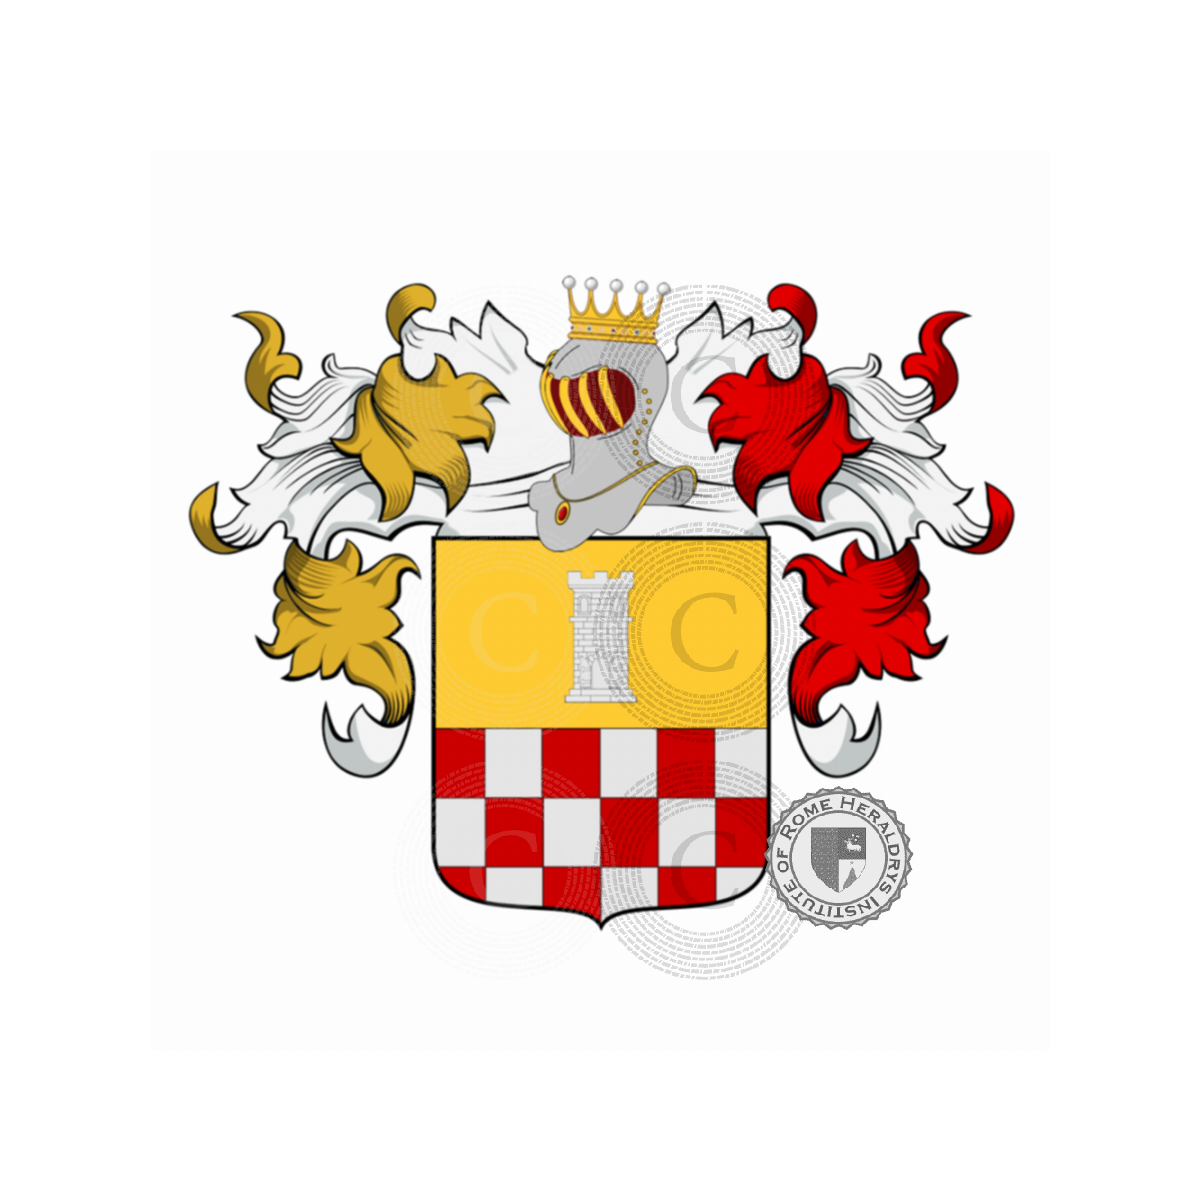 Wappen der FamiliePorta, Alimenti della Porta,de la Porta de S.Urso,de la Porte,de Quart,della Porta,della Porta de Carli,Portis